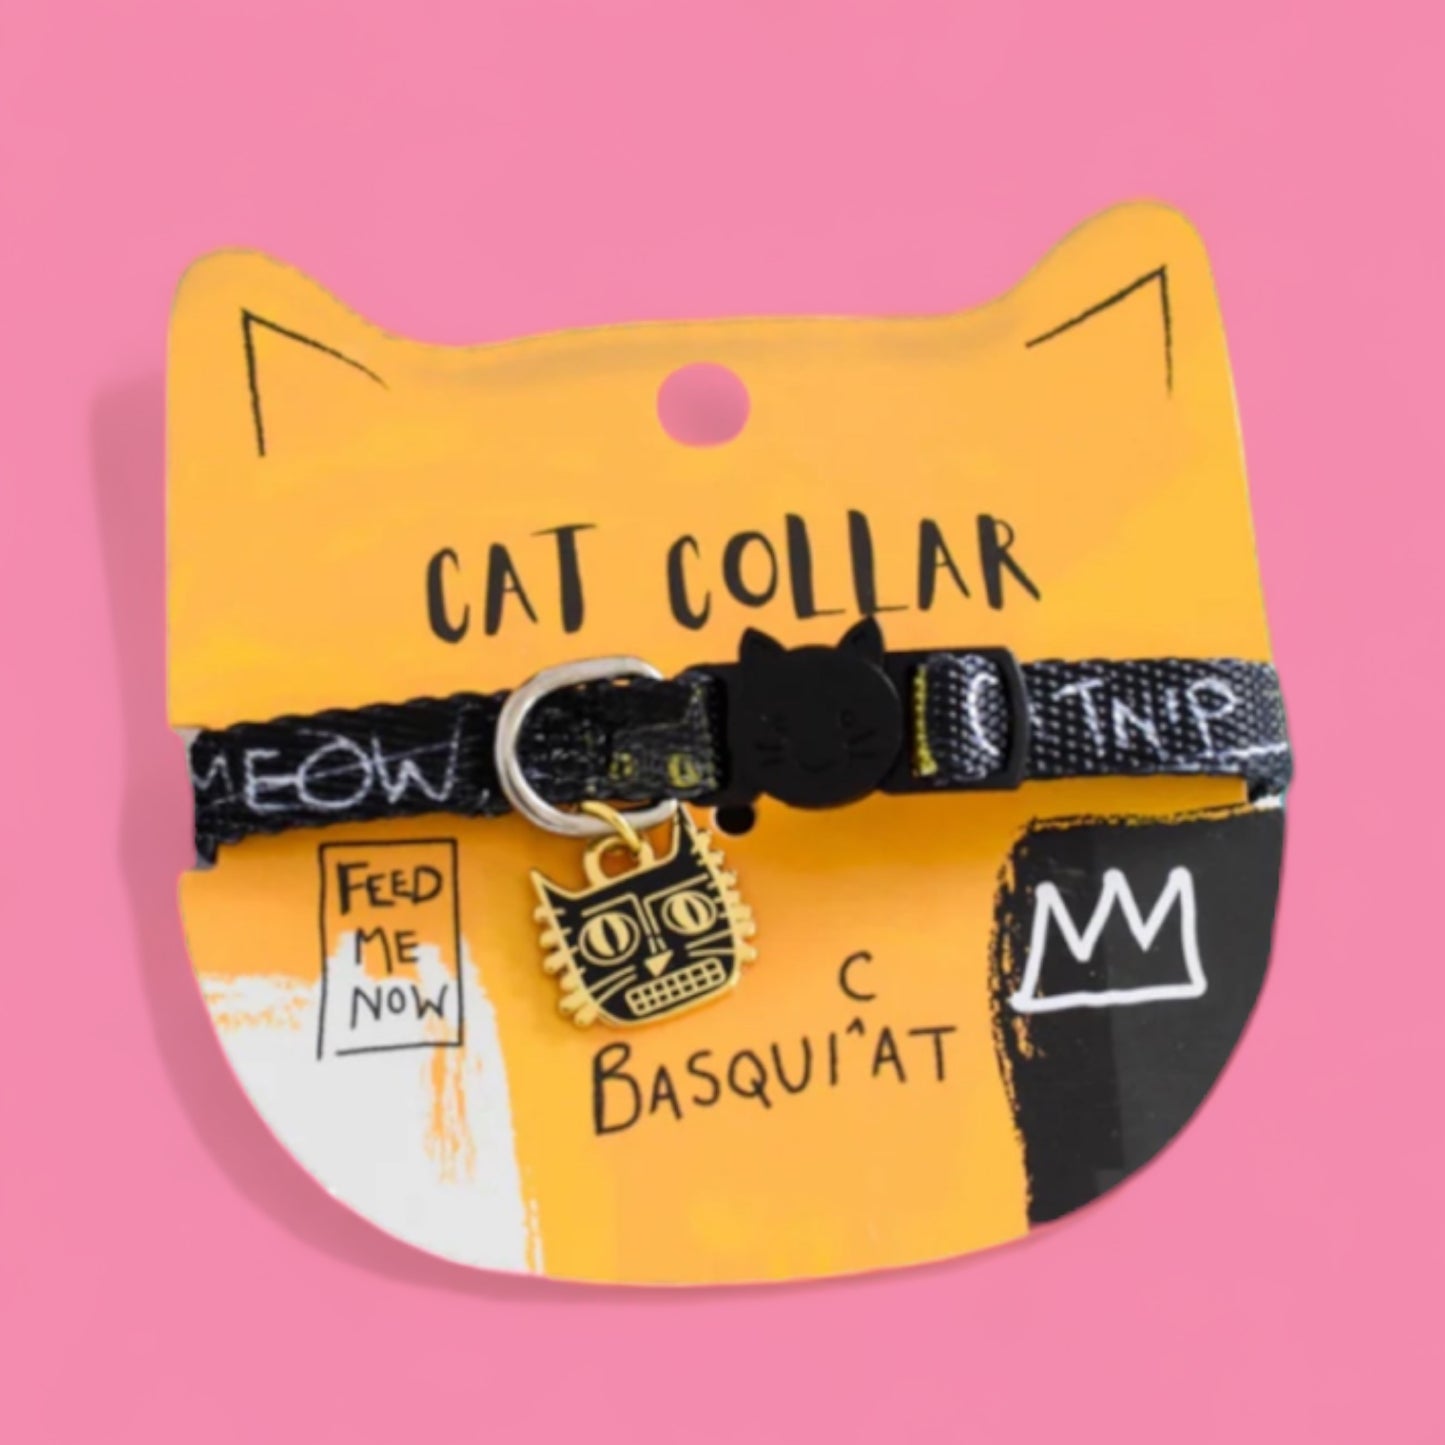 BasquiCAT Cat Collar